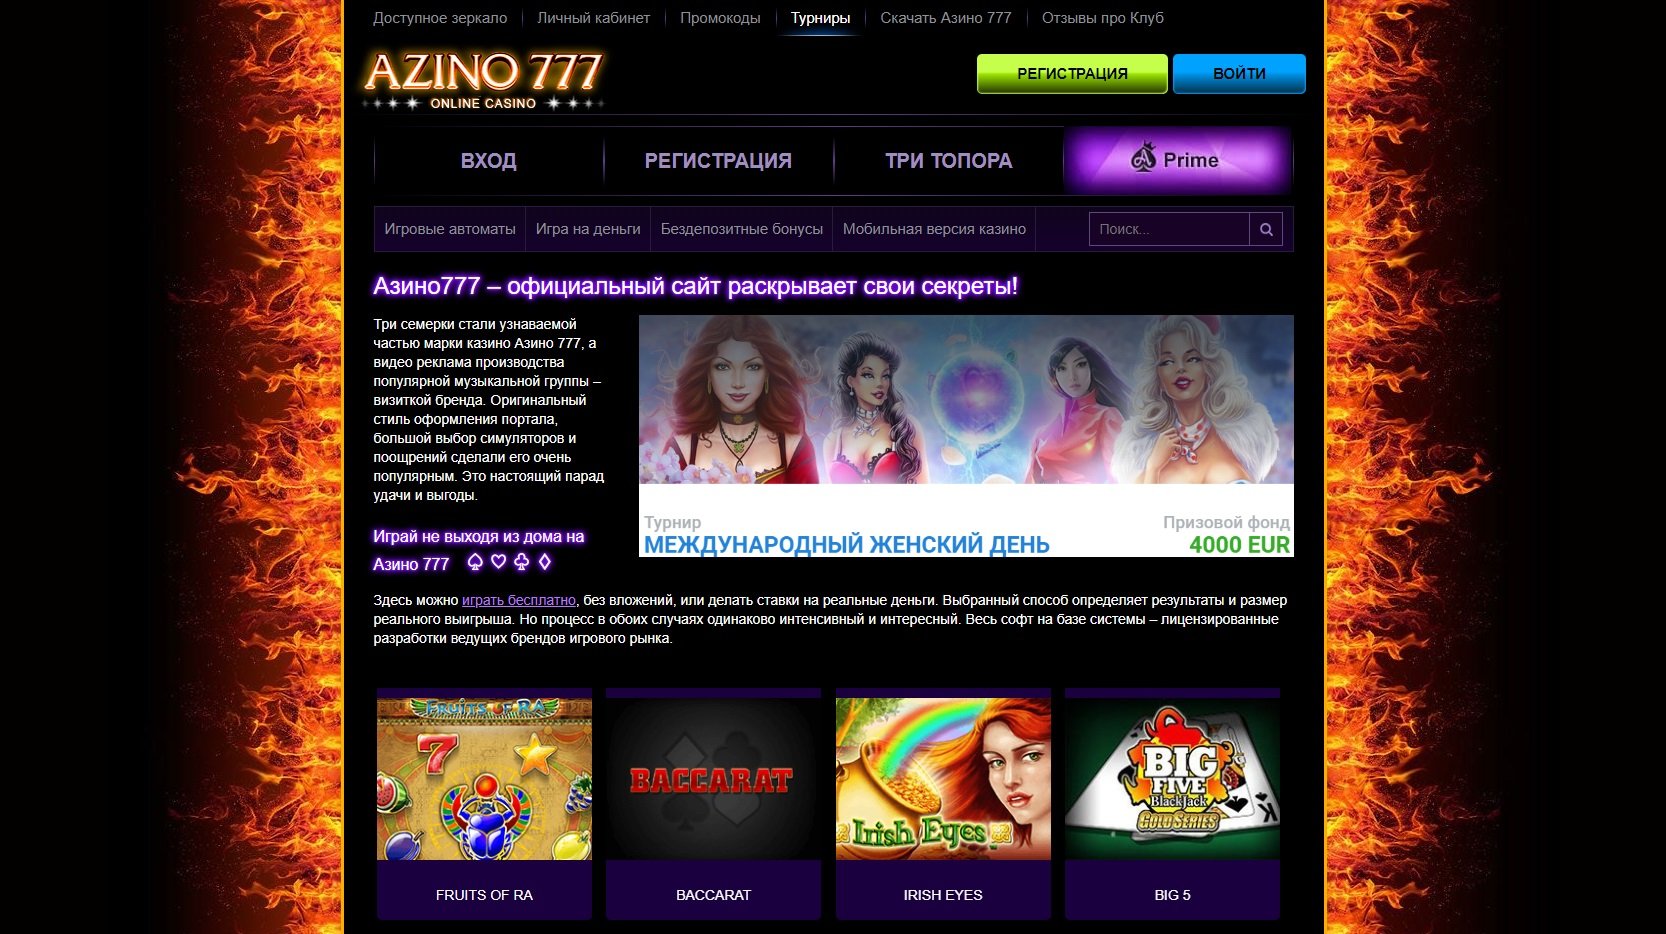 Казино 777 официальный сайт мобильная версия зеркало играть бесплатно приложение для ставок на спорт на айфон